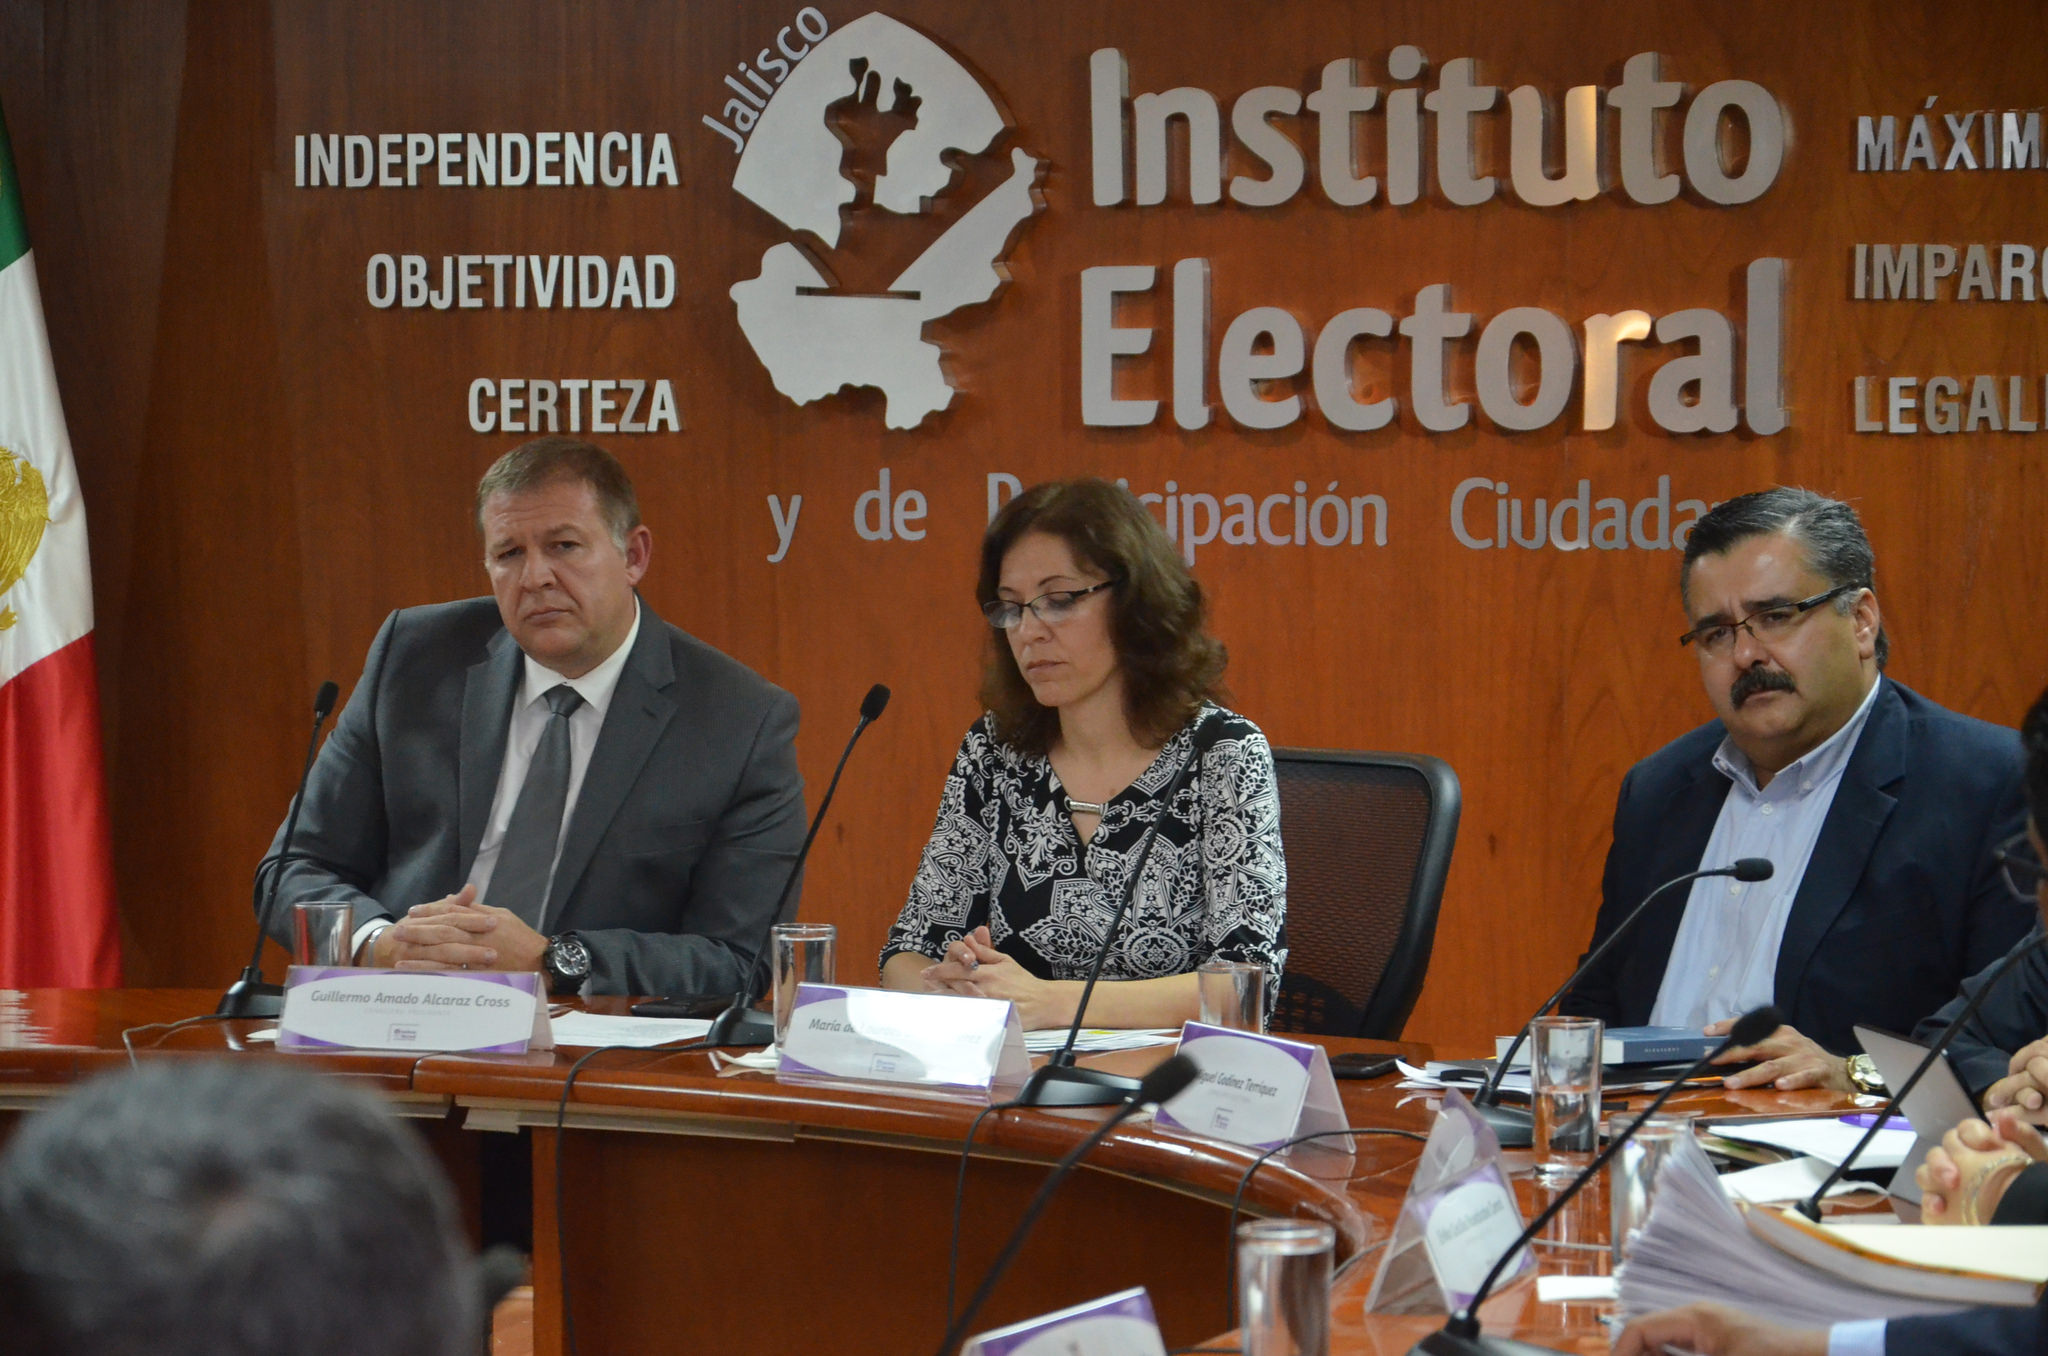 Elecciones-2018-Jalisco-IEPC-PAN-PRD-PRI-PVEM-Movimiento-Ciudadano-Alcaldes-Ayuntamientos